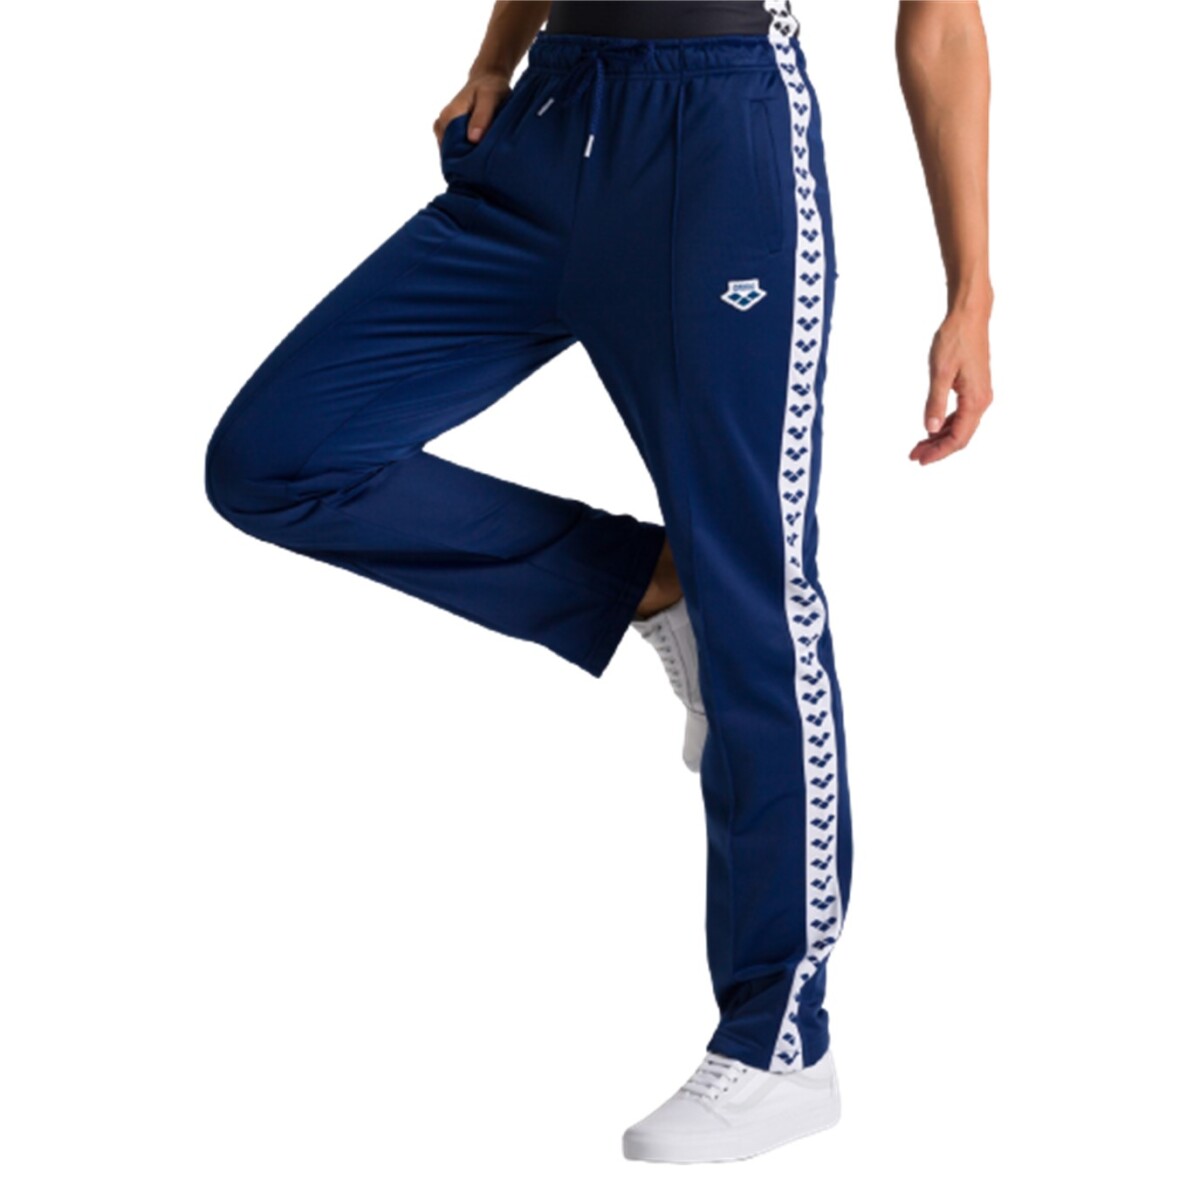 Pantalon Para Mujer Arena Straight Team - Azul Marino 